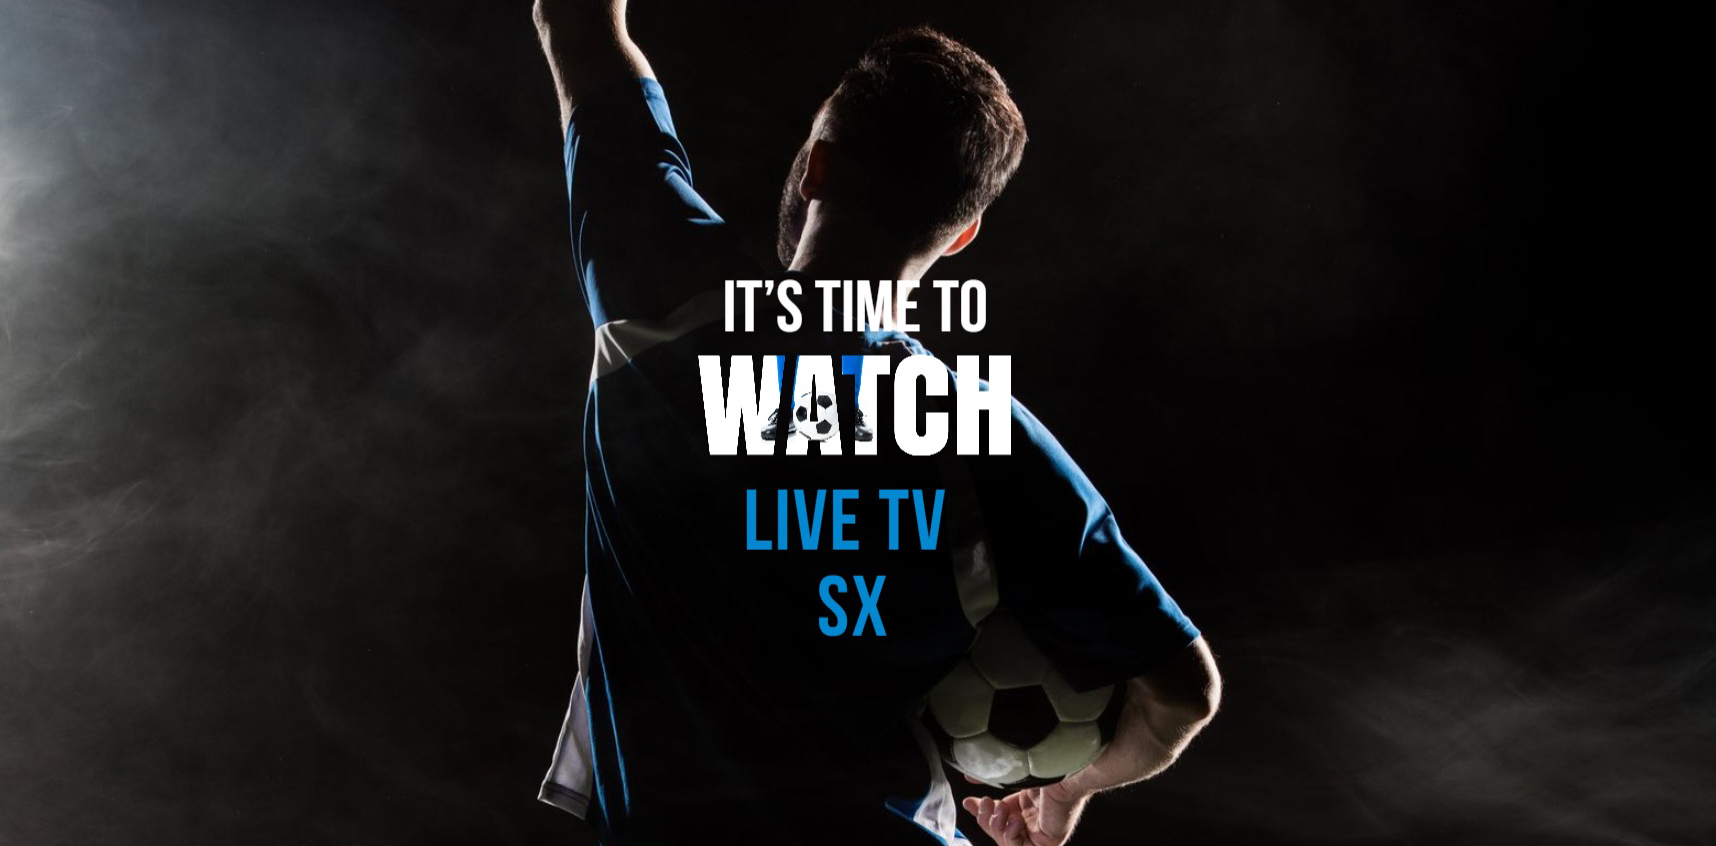 TV en directo SX: mira emisións deportivas en directo de balde